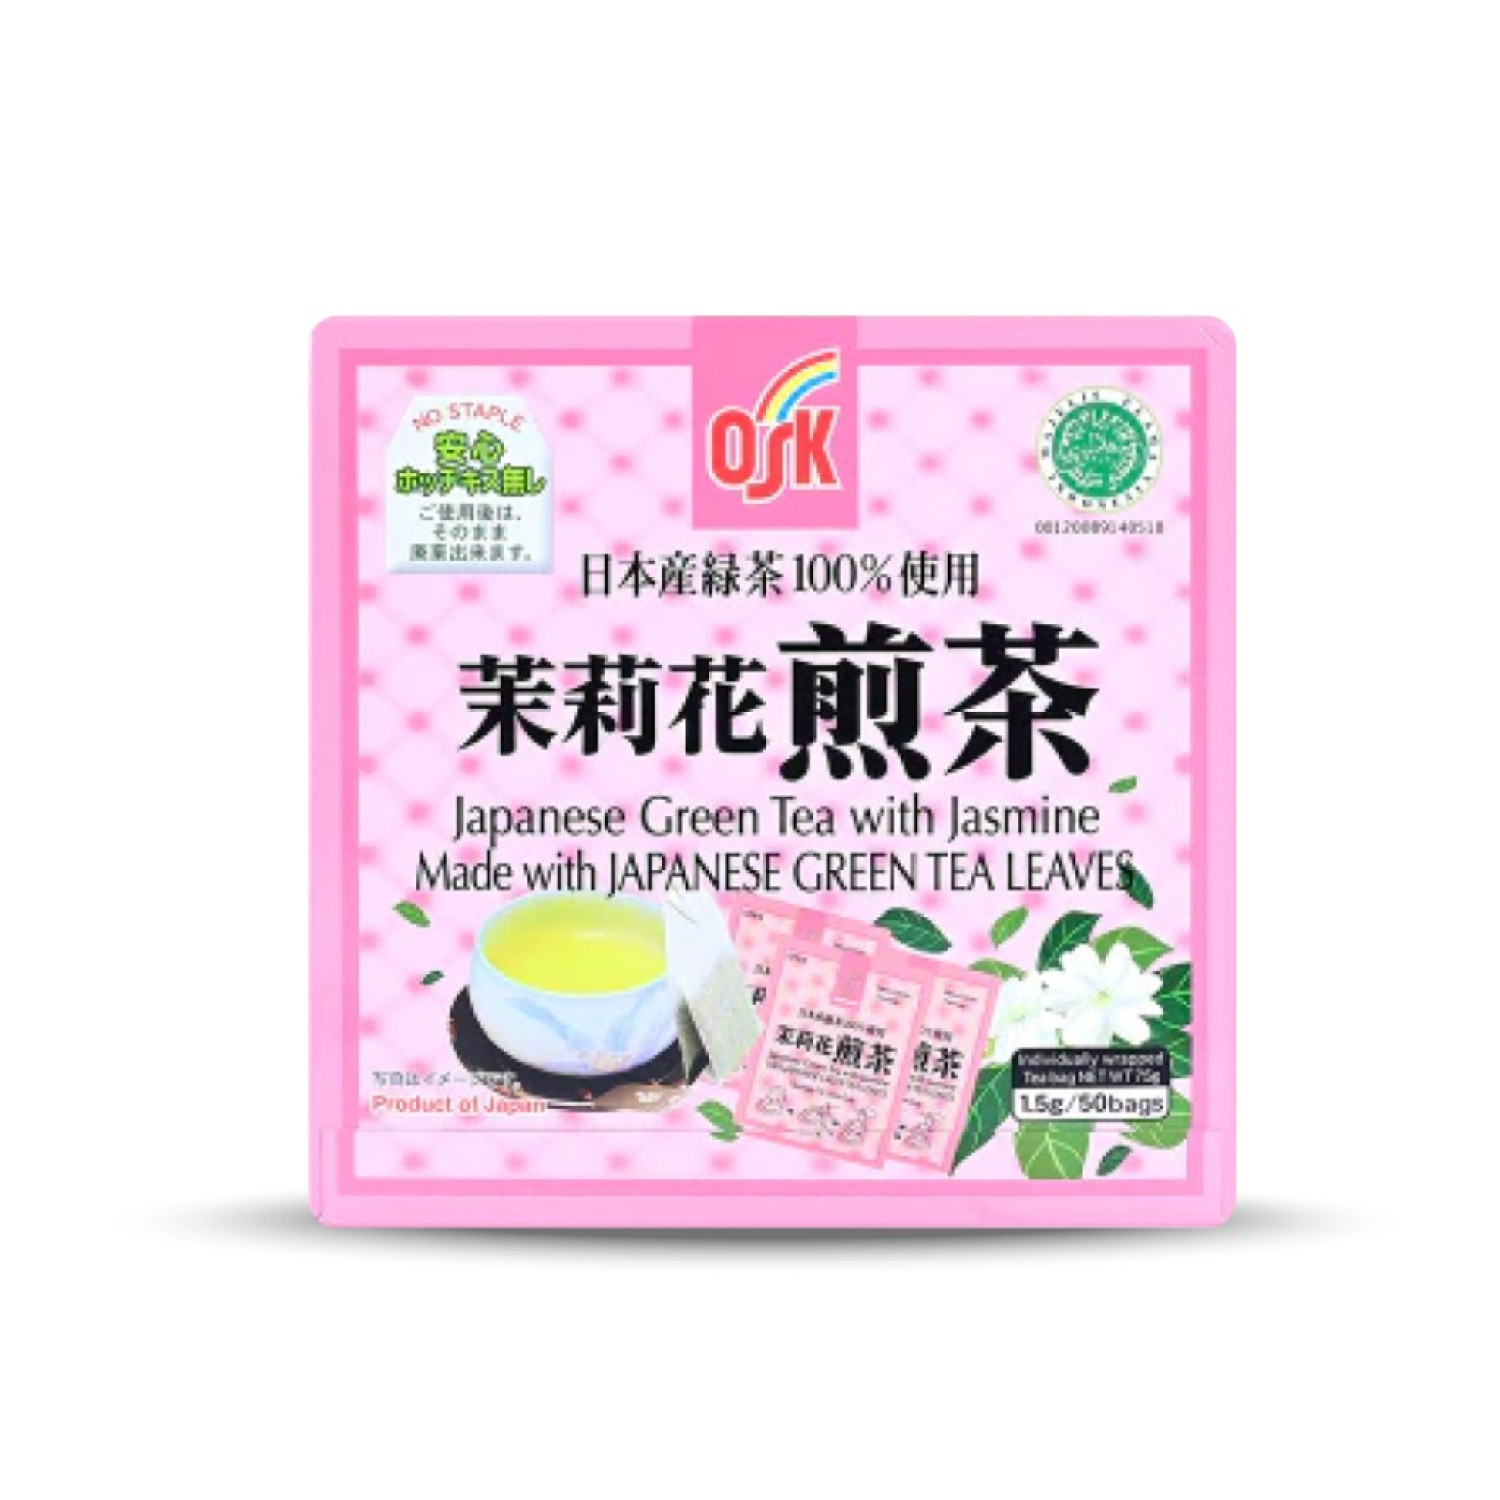 OSK Japanese Green Tea 